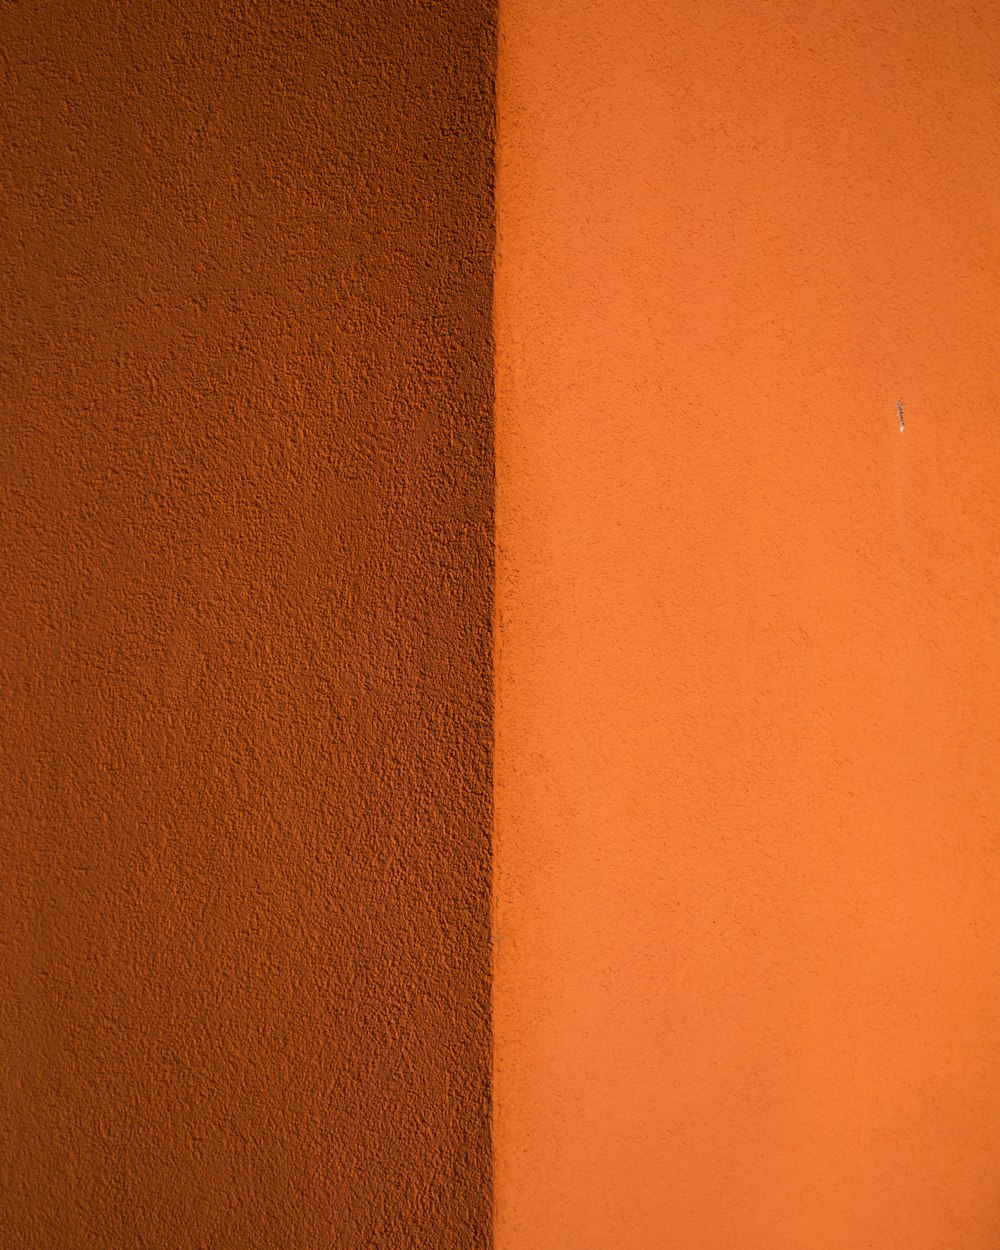 Pintura de pared naranja cerca de la mesa de madera marrón